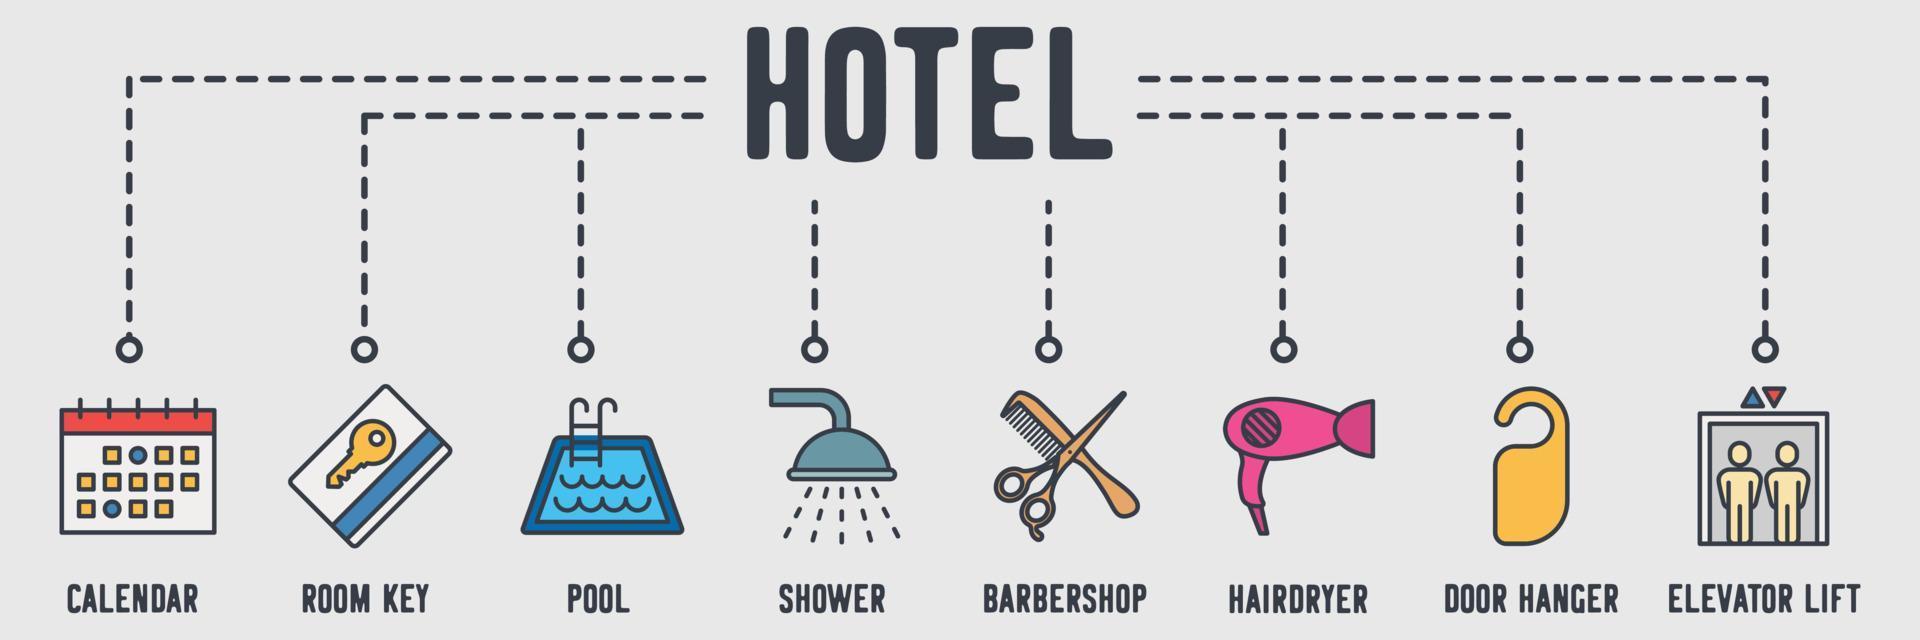 icona web banner servizio hotel. calendario, chiave della camera, piscina, doccia, barbiere, asciugacapelli, appendiabiti, concetto di illustrazione vettoriale ascensore ascensore.